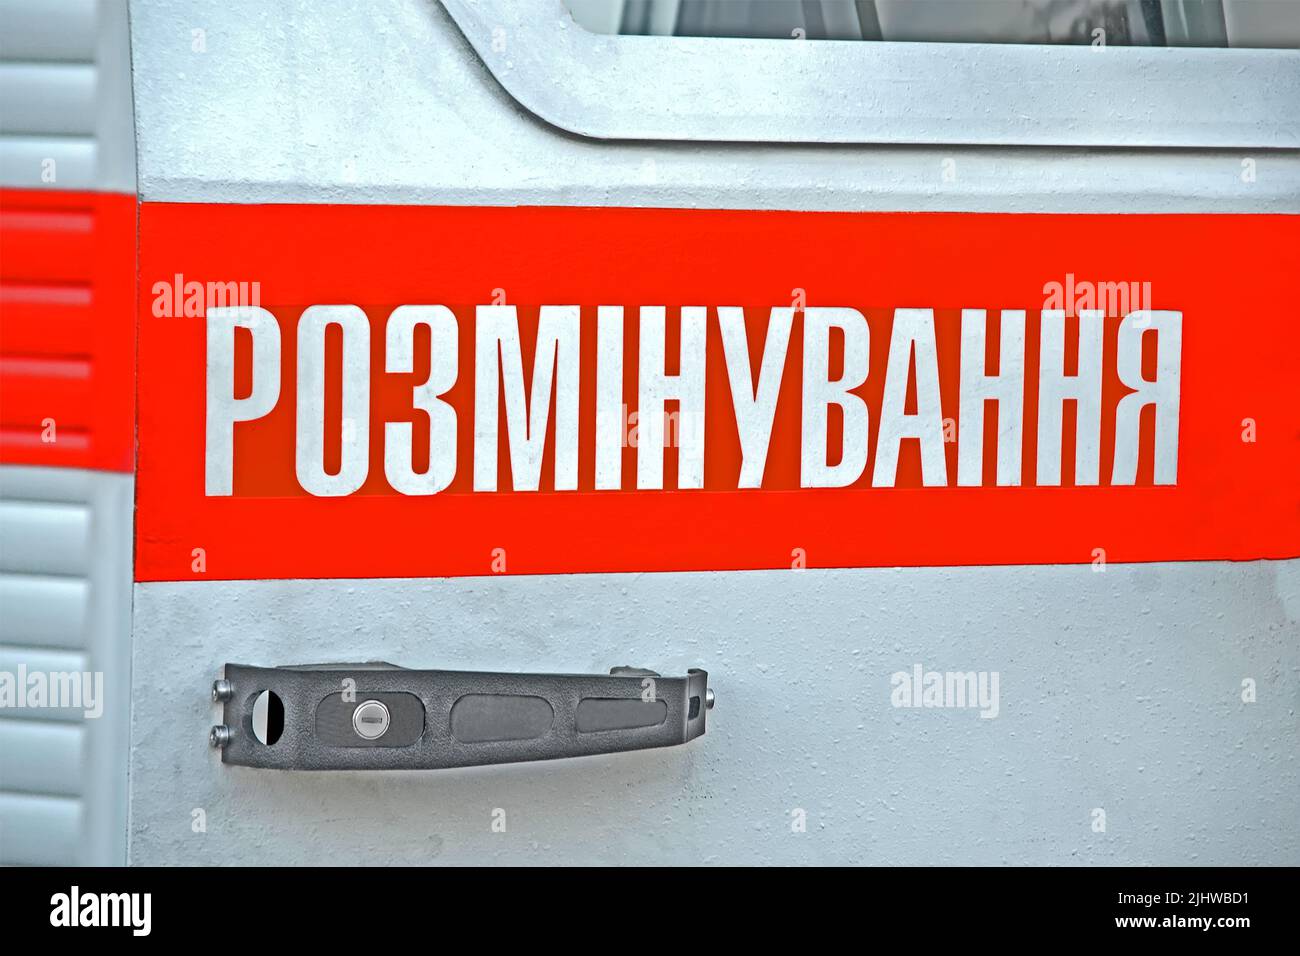 déminage, ou déminage, ou levage des mines comme texte sur la langue ukrainienne sur la surface métallique, la diversité de la sécurité Banque D'Images